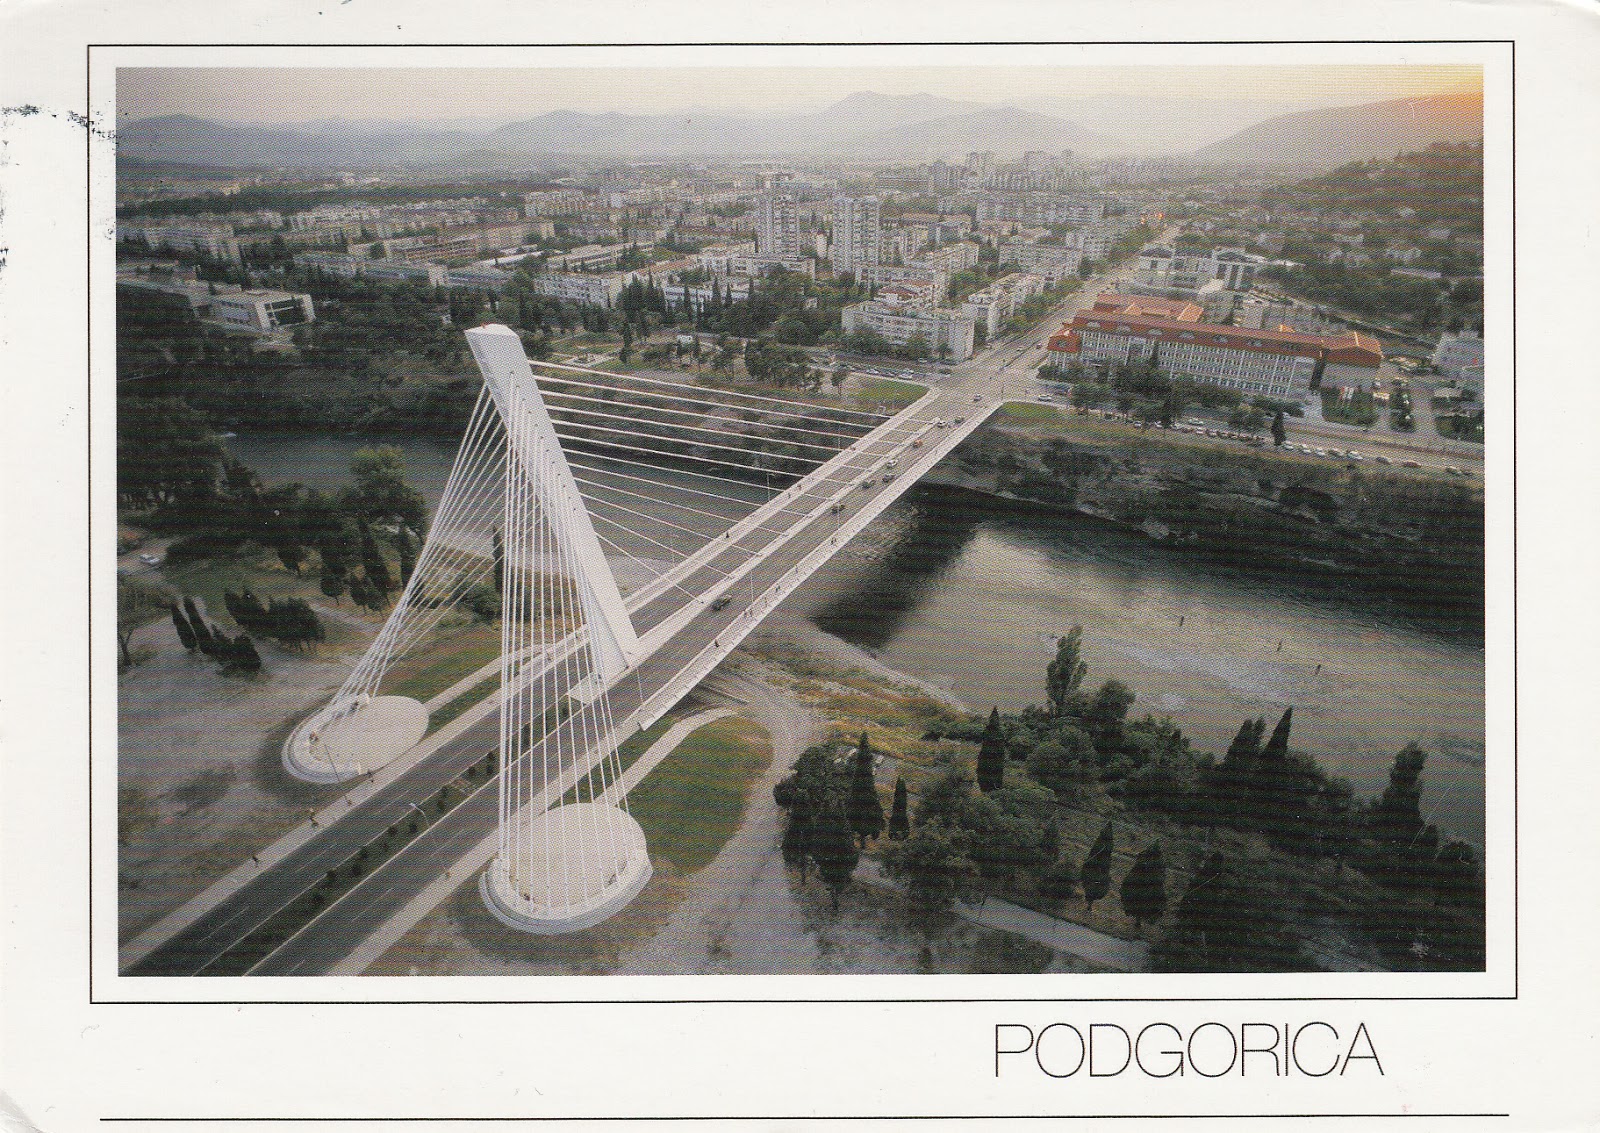 Montenegro: Millennium Bridge in Podgorica.